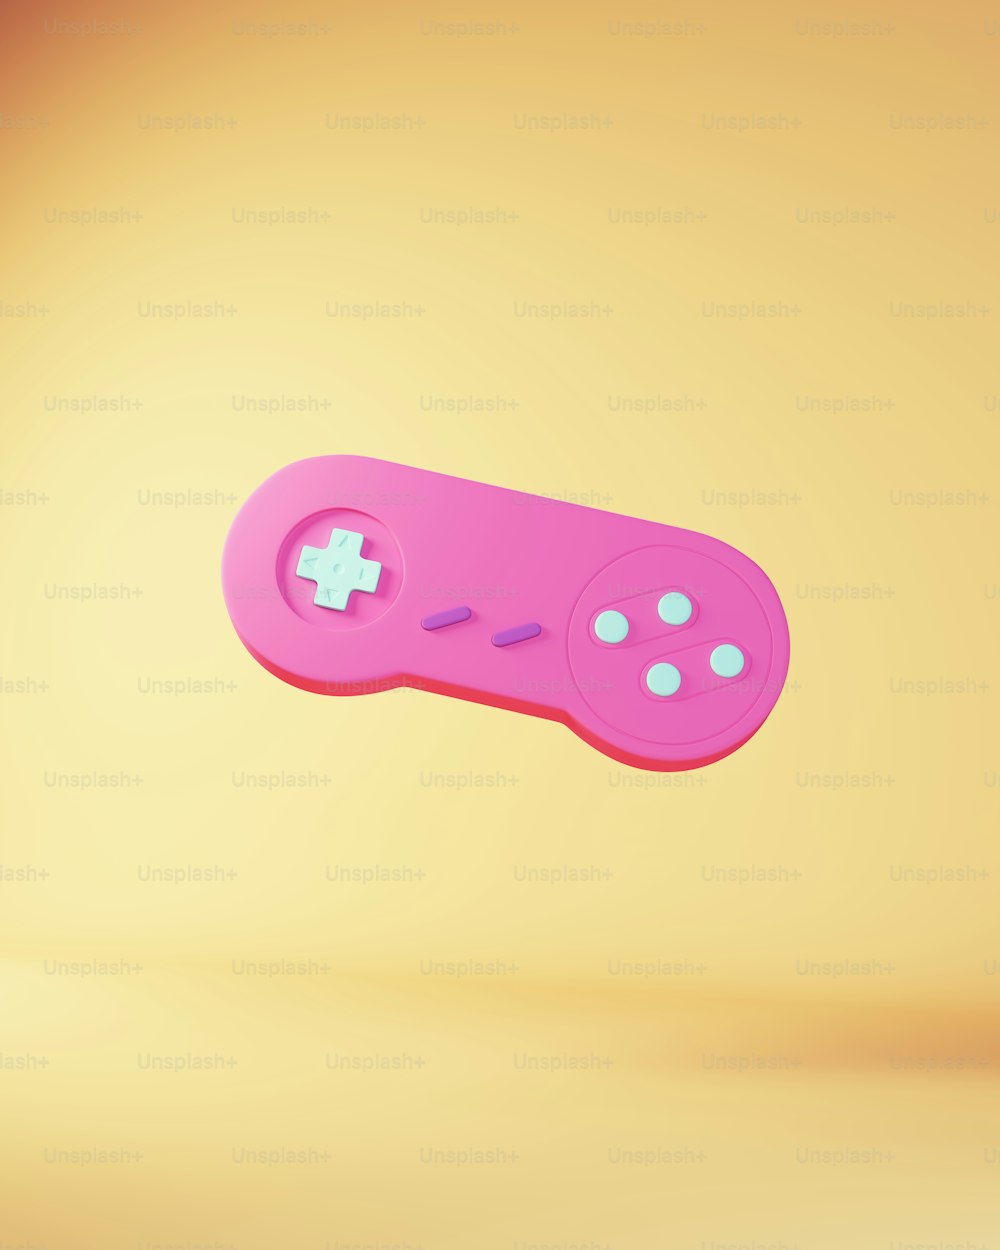 Pink Blue Contrôleur de jeu vidéo Arcade Pad Classic Industry Gaming Industry Accessoire périphérique Rendu d’illustration 3D